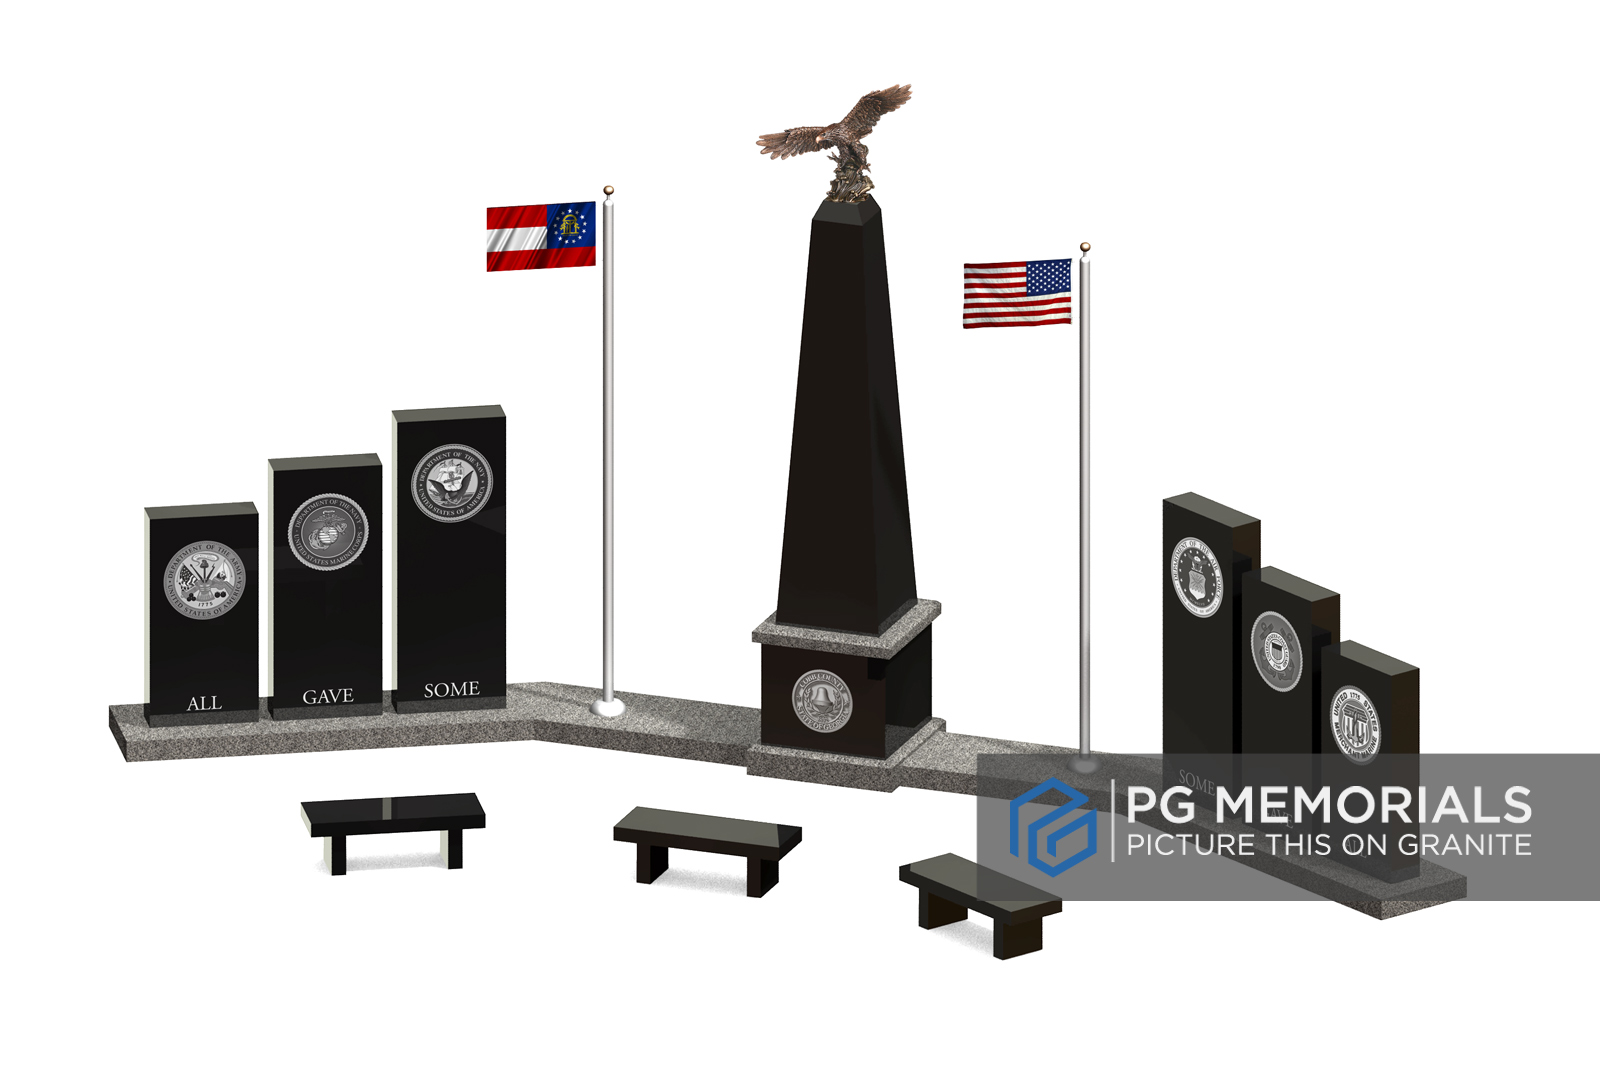 Cobb county memorial design concept